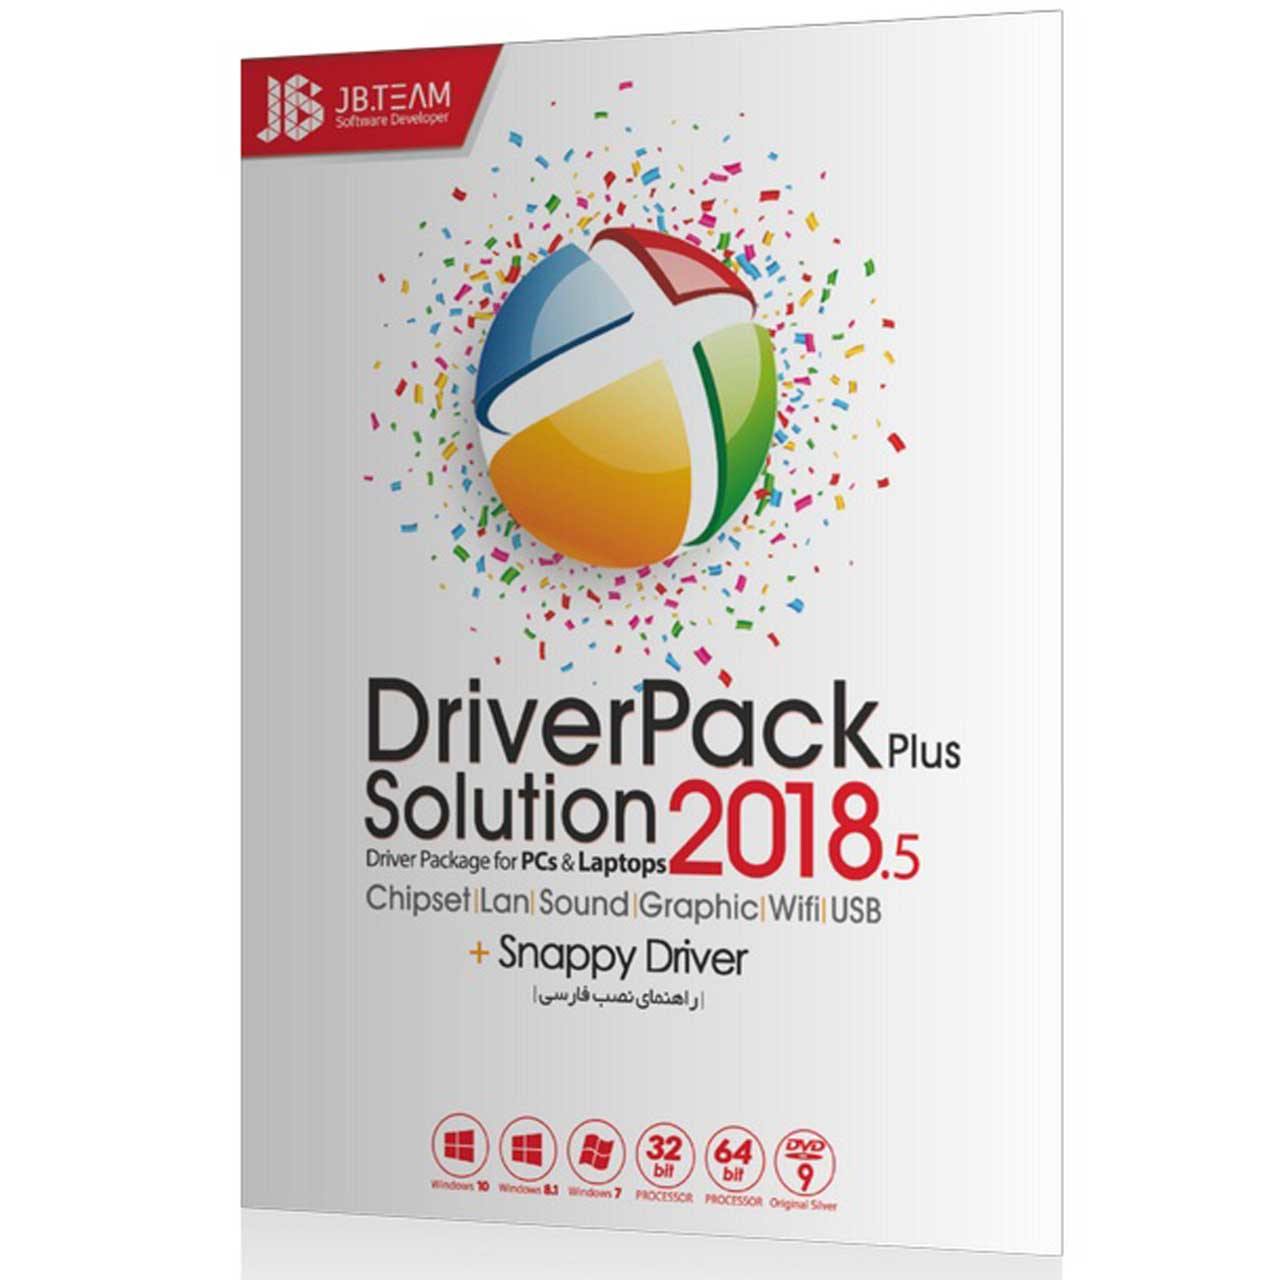 مجموعه نرم افزاری DriverPack Solution 2018 6 نشر جی بی تیم